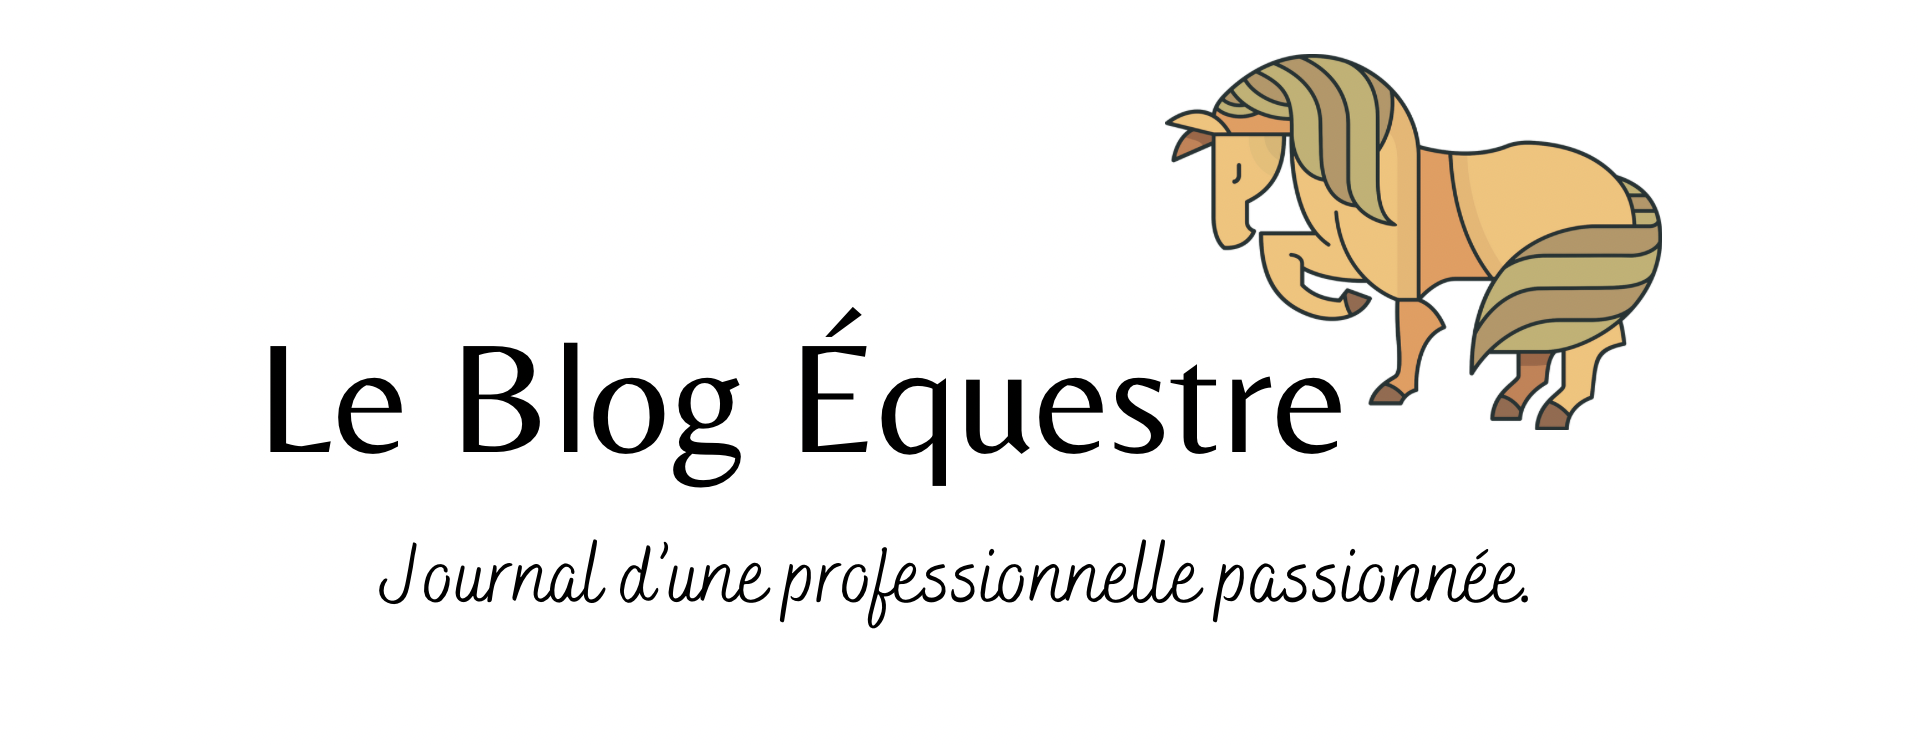 Le Blog Equestre 